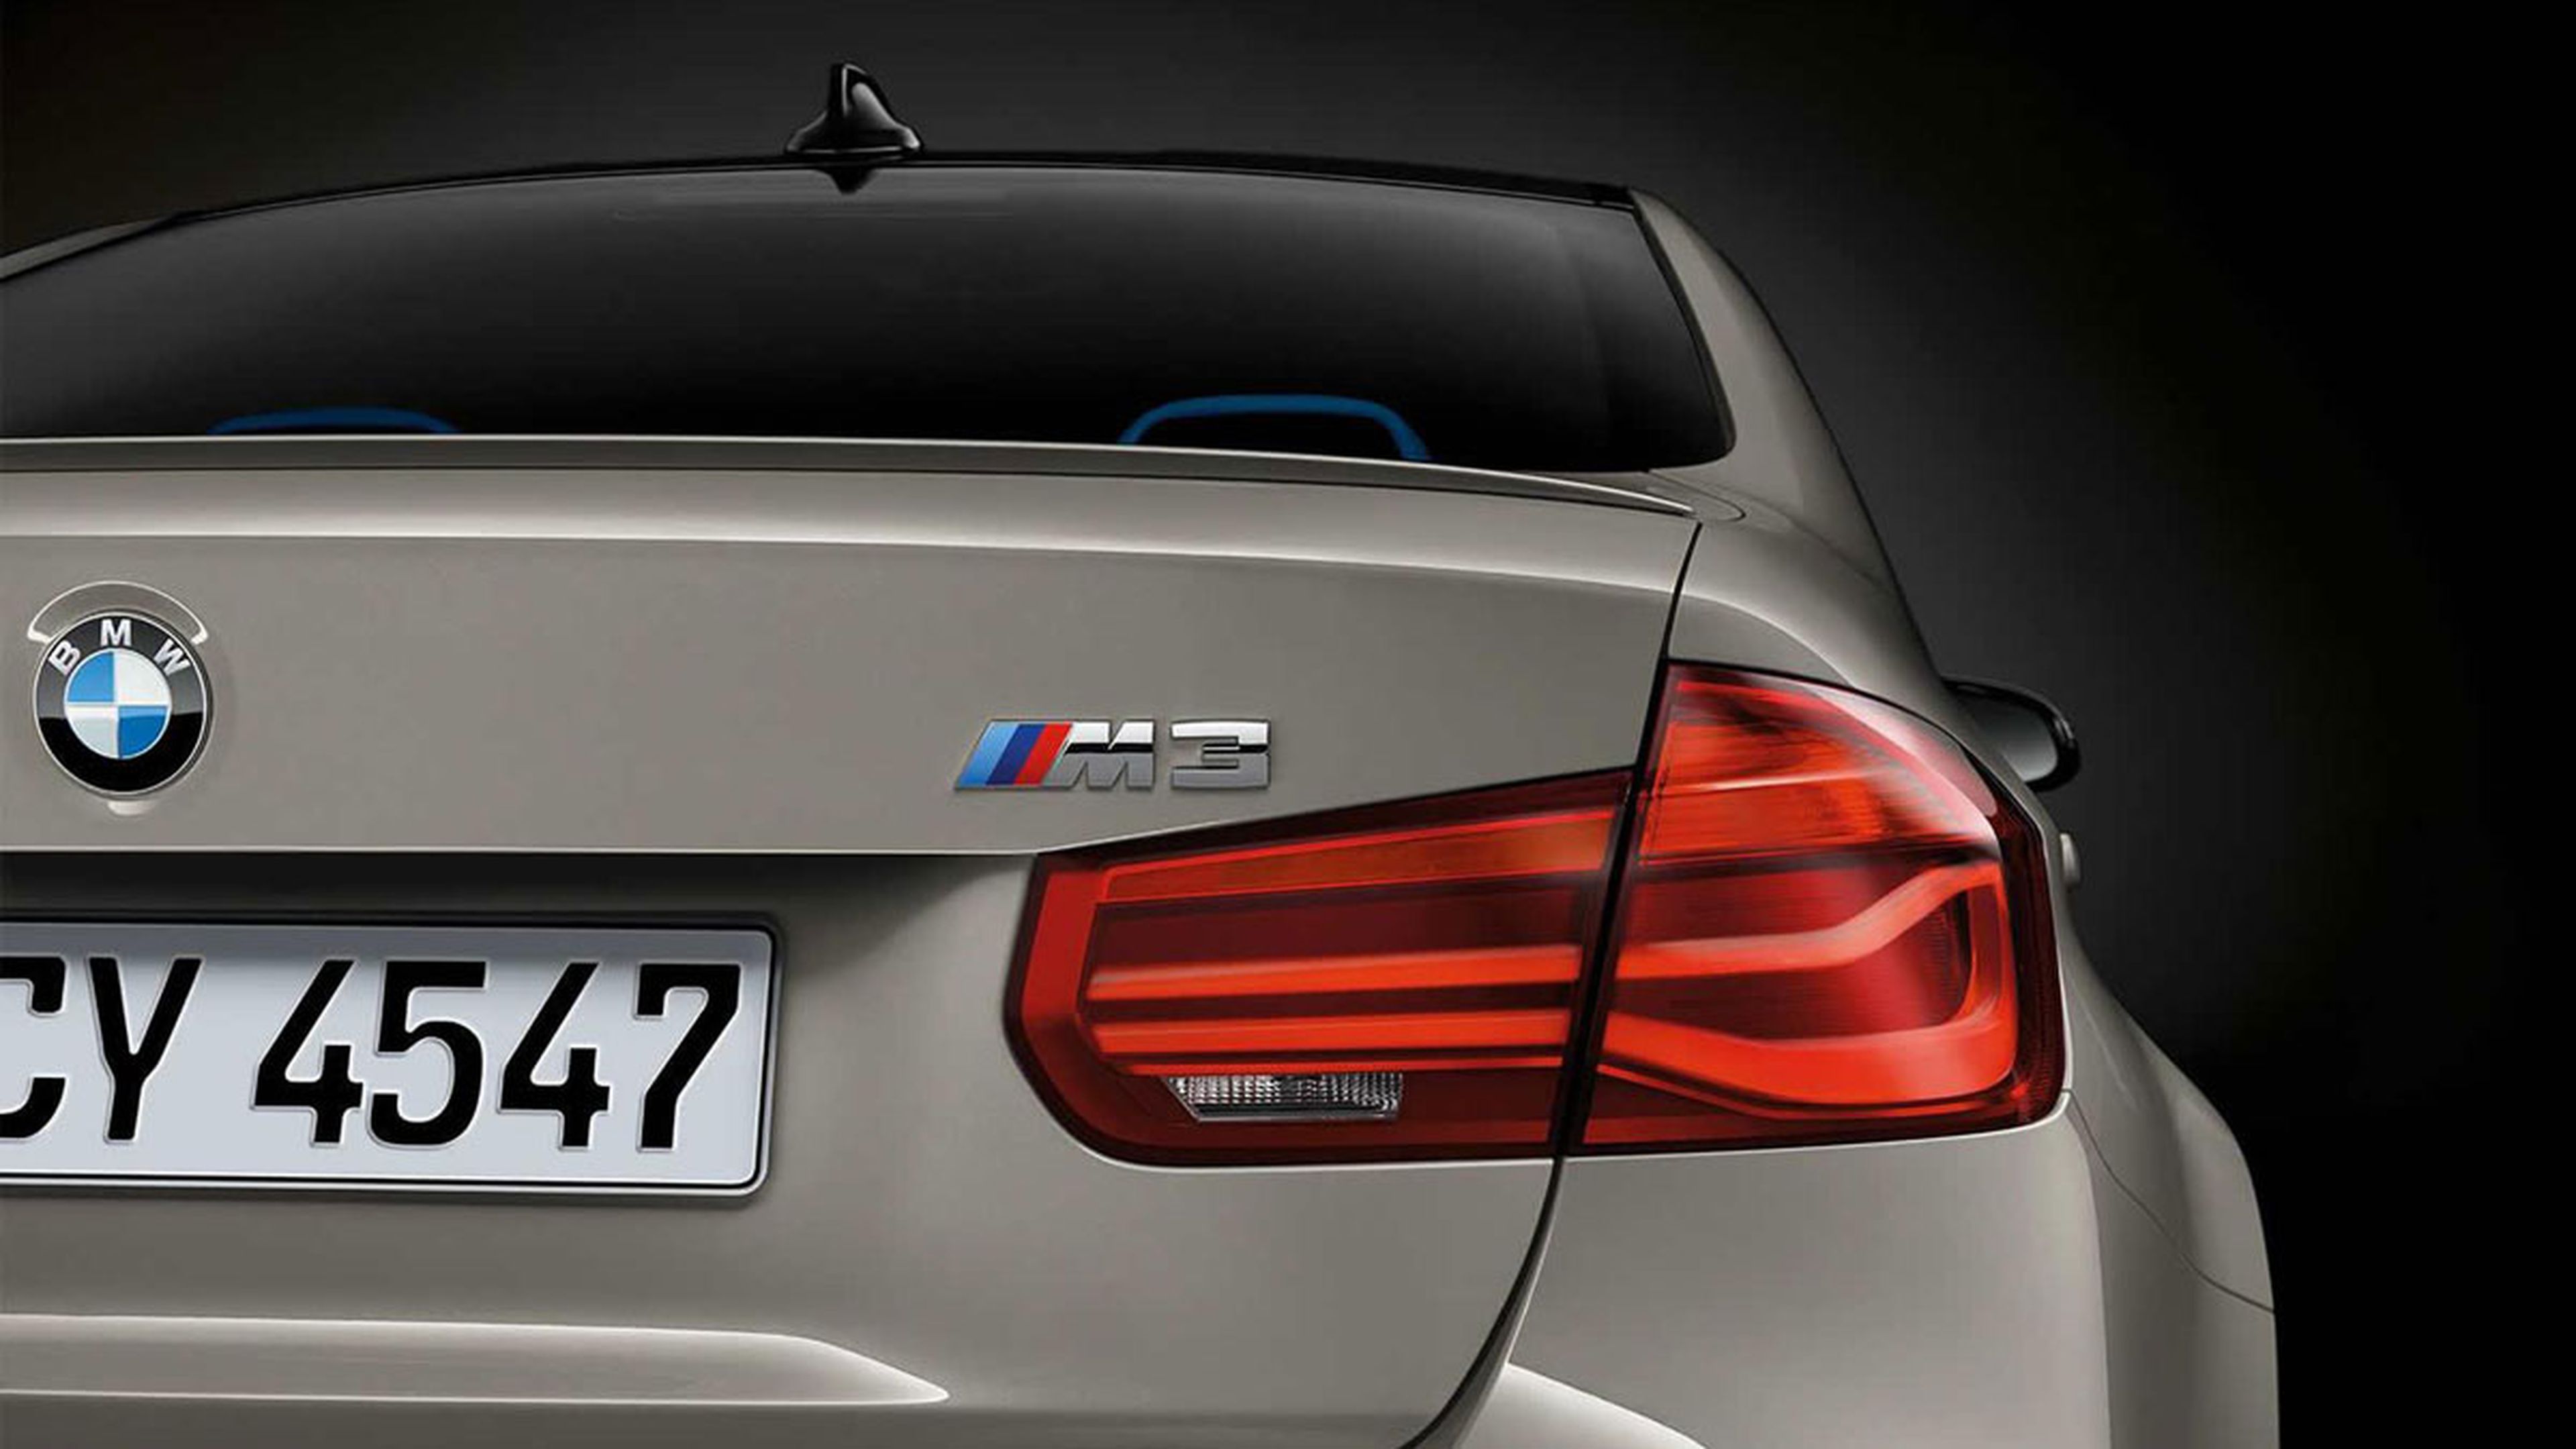 BMW cambia de lema: "Cuando conduzcas, conduce"